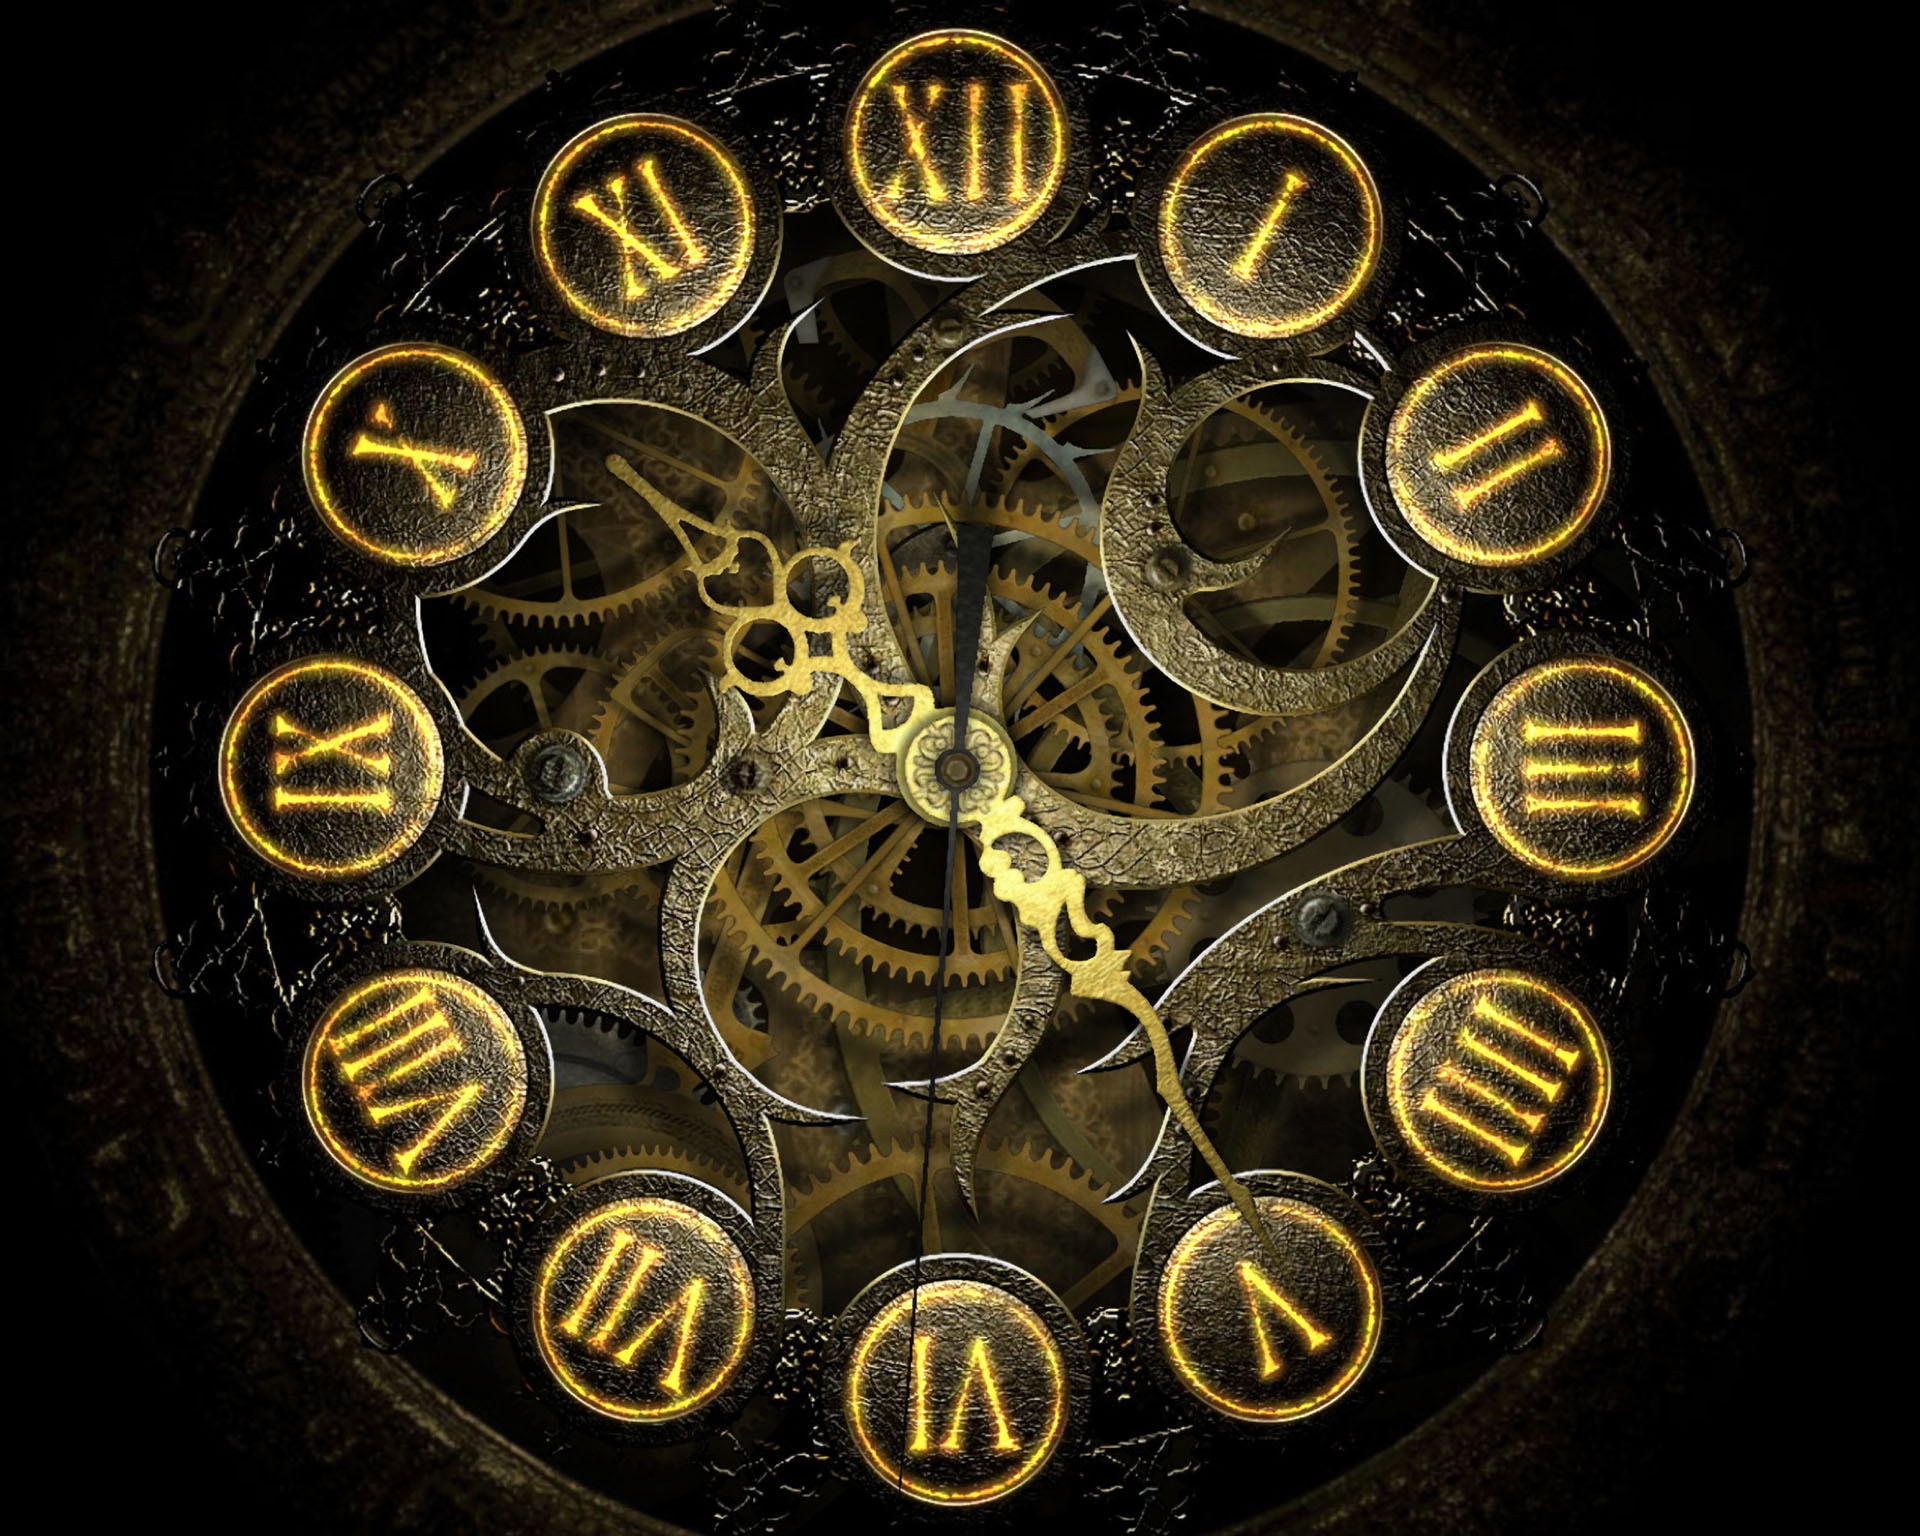 Gears Clock Face Steampunk - 1920x1536 Wallpaper 